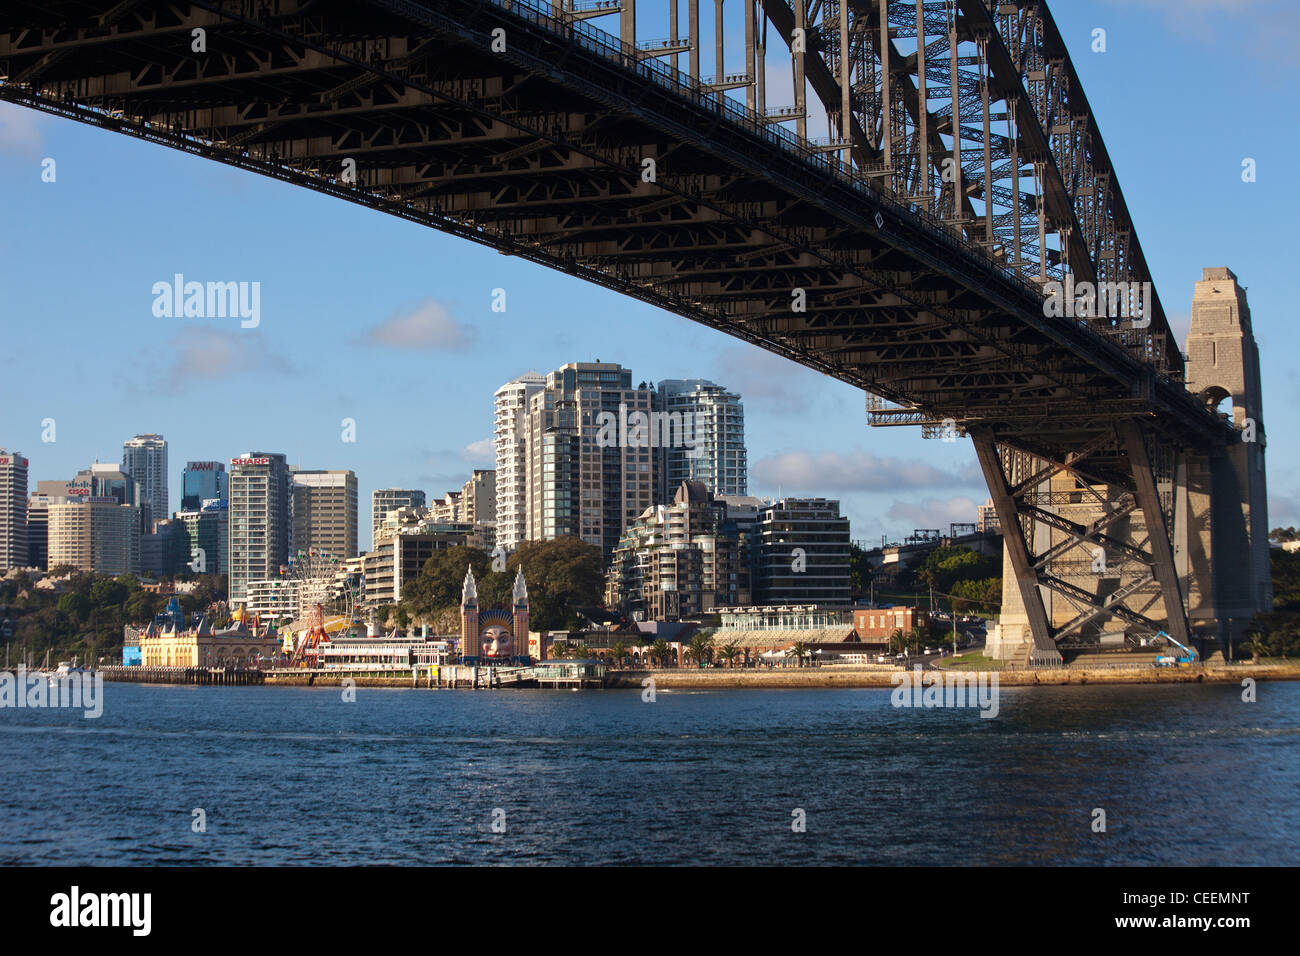 Sydney Harbour Bridge, Sydney, Australia Stock Photo